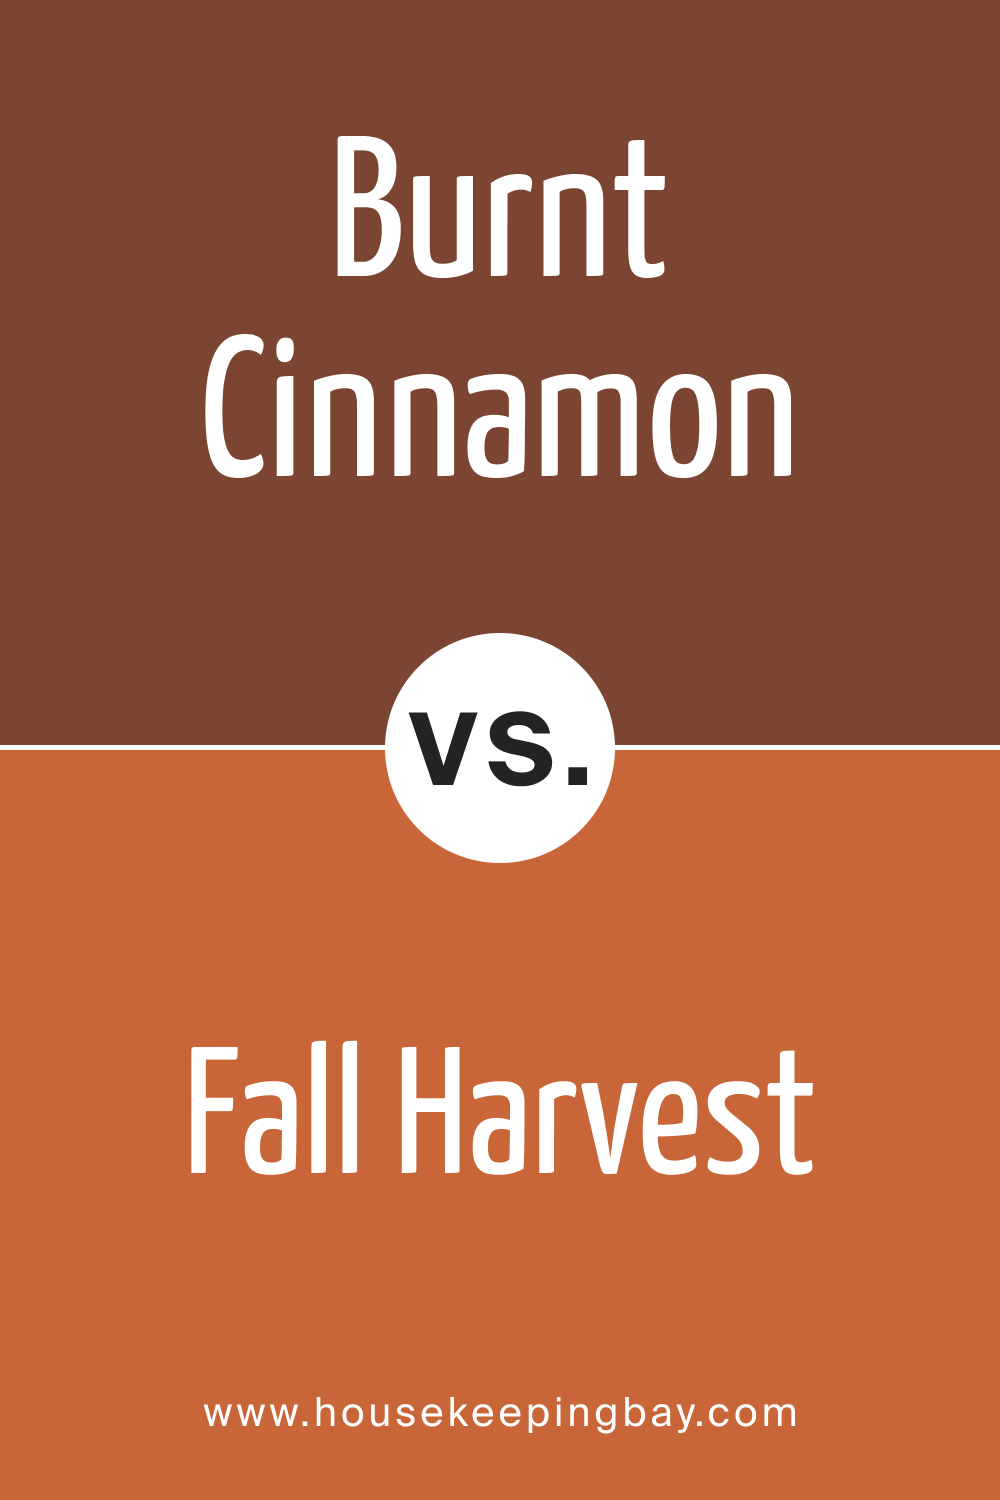 BM Burnt Cinnamon 2094-10 vs. BM 2168-10 Fall Harvest